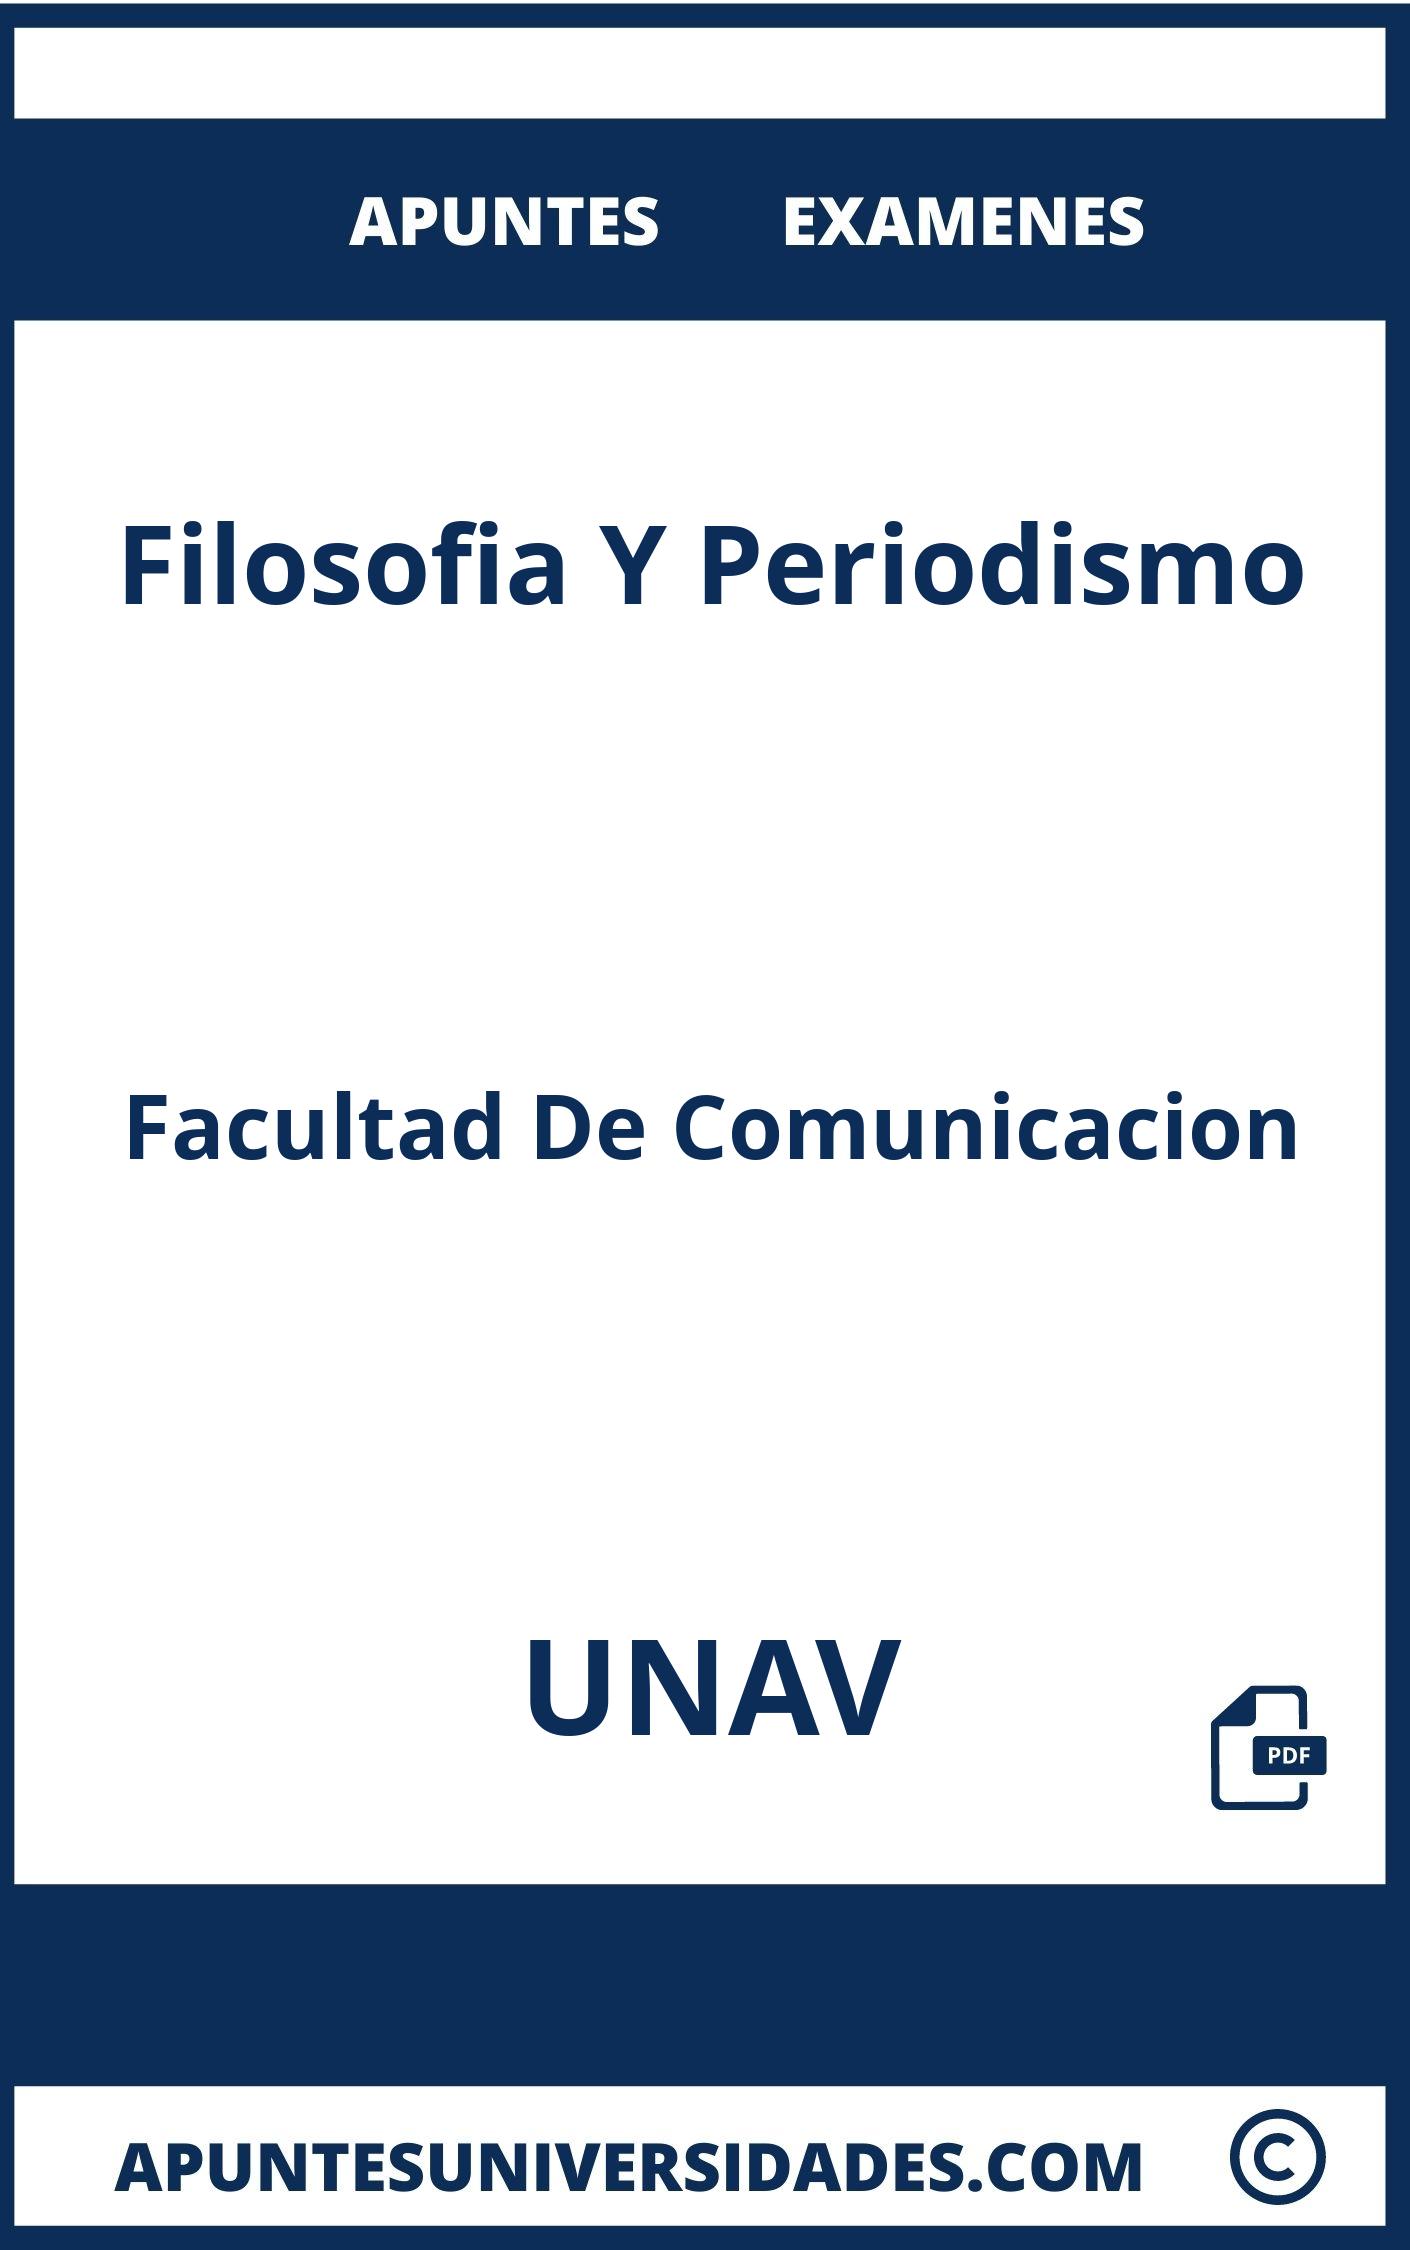 Examenes y Apuntes de Filosofia Y Periodismo UNAV